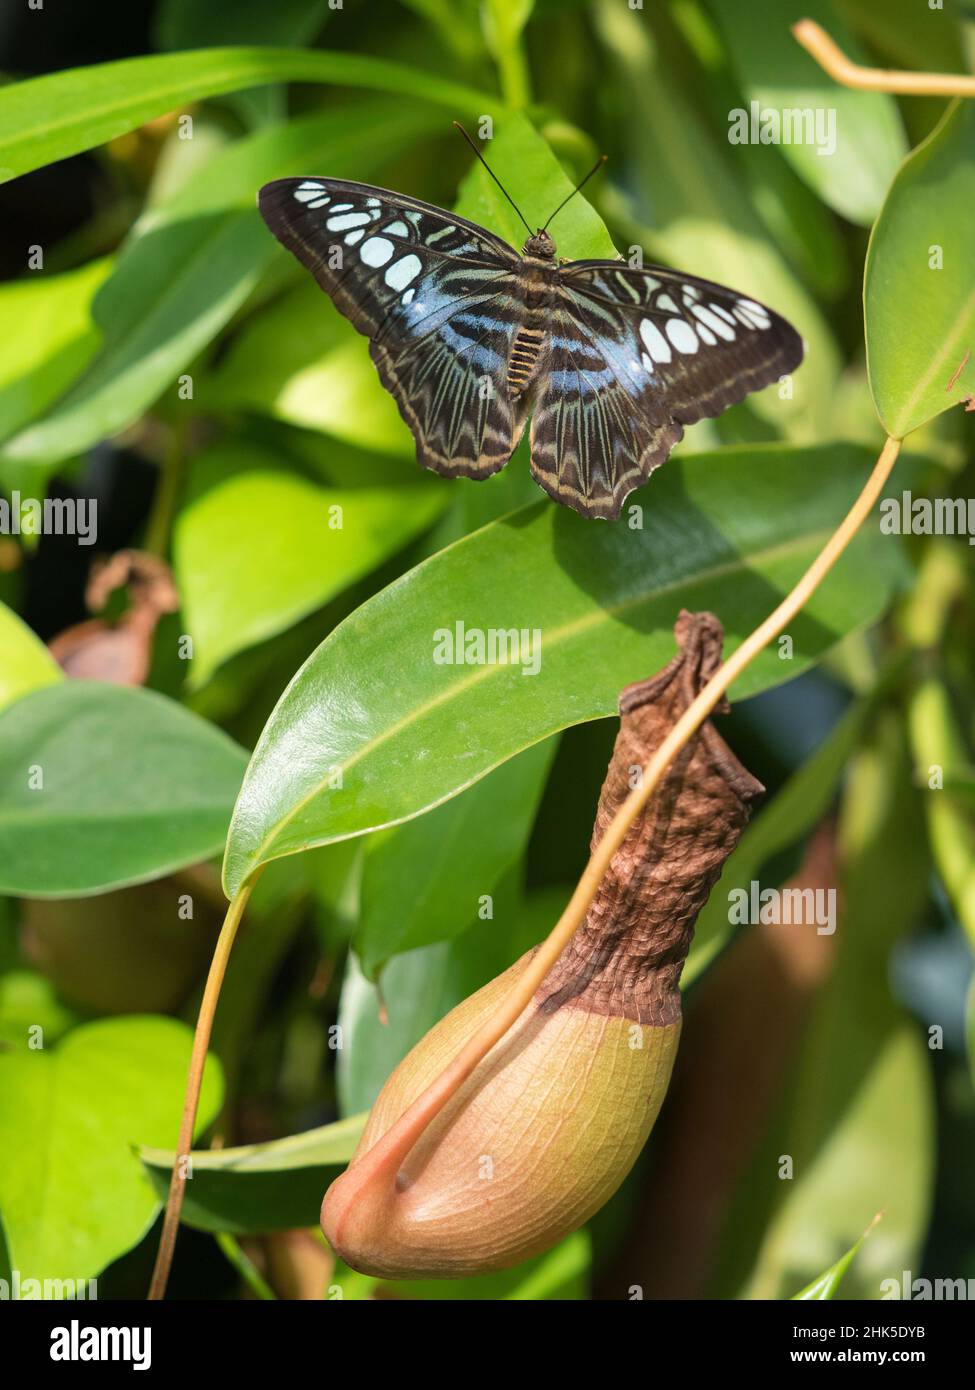 Parthenos Sylvia, connu communément sous le nom de coupe-monde, est une espèce de papillon trouvée dans le sud et le sud-est de l'Asie, principalement dans les zones boisées.J'ai espionné celui-ci Banque D'Images